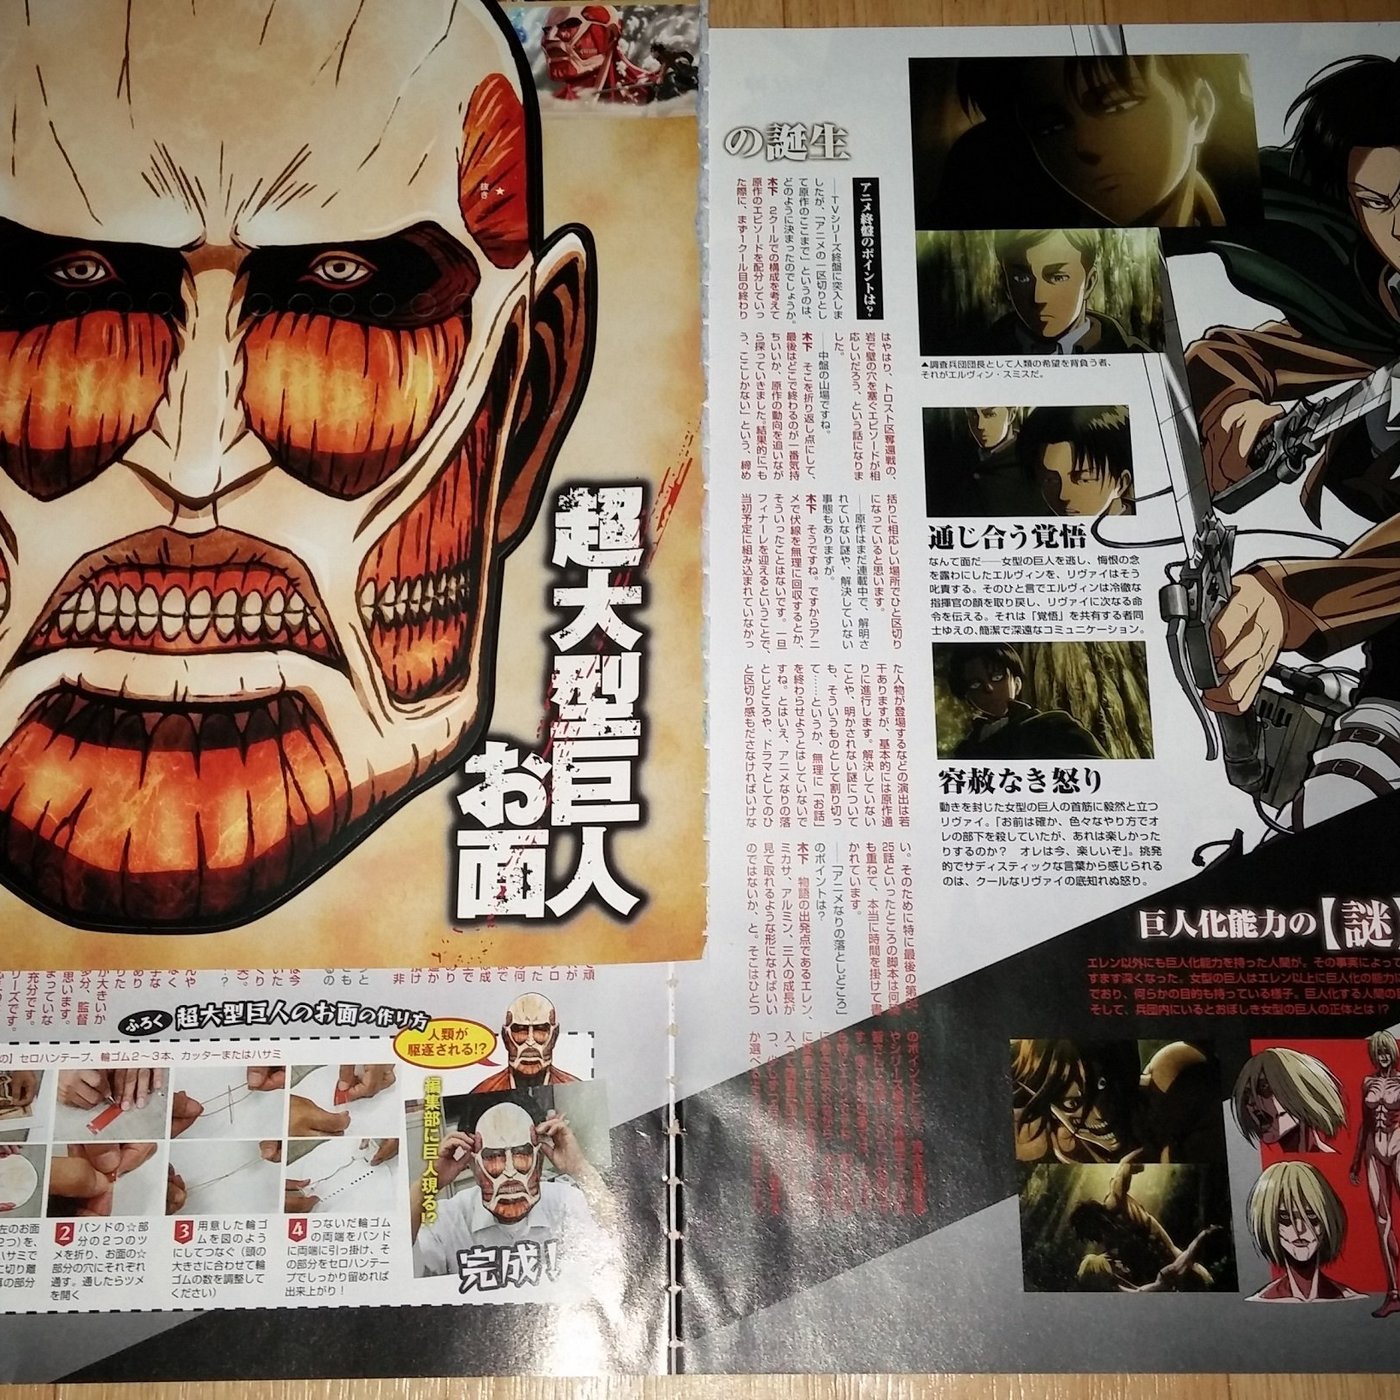 進擊的巨人日本熱門動漫雜誌內頁4頁附錄超大型巨人面具 Yahoo奇摩拍賣